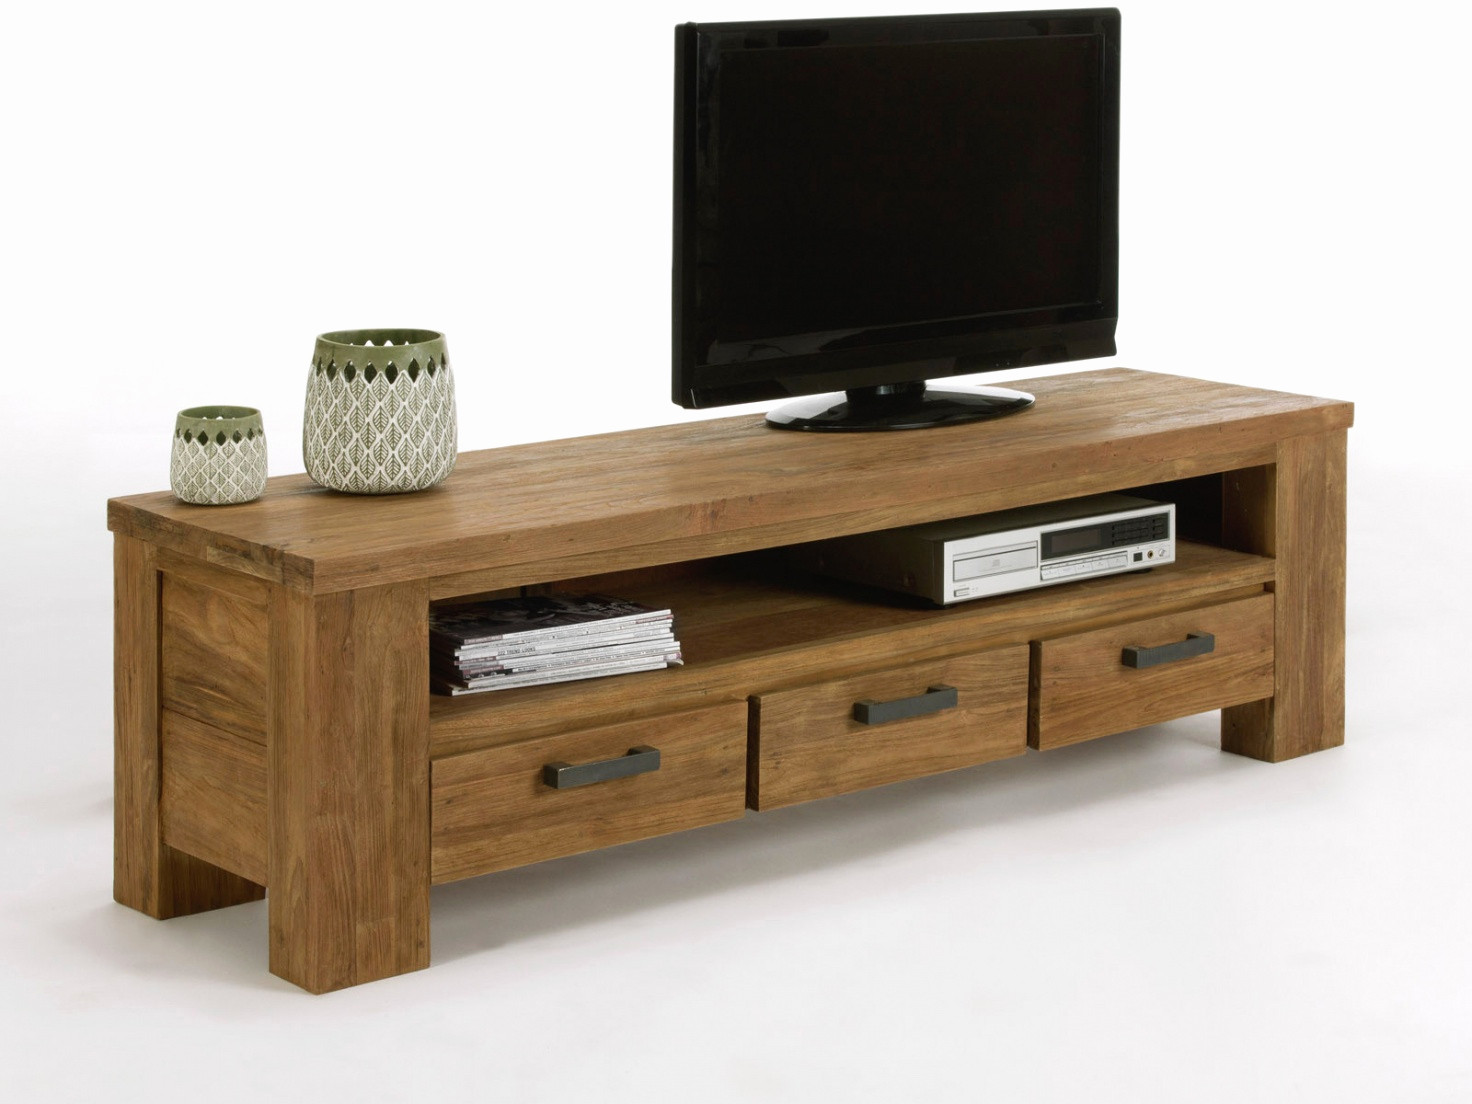 meuble tv angle bois meuble tv angle bois frisch meuble tele moderne maison design apsip of meuble tv angle bois